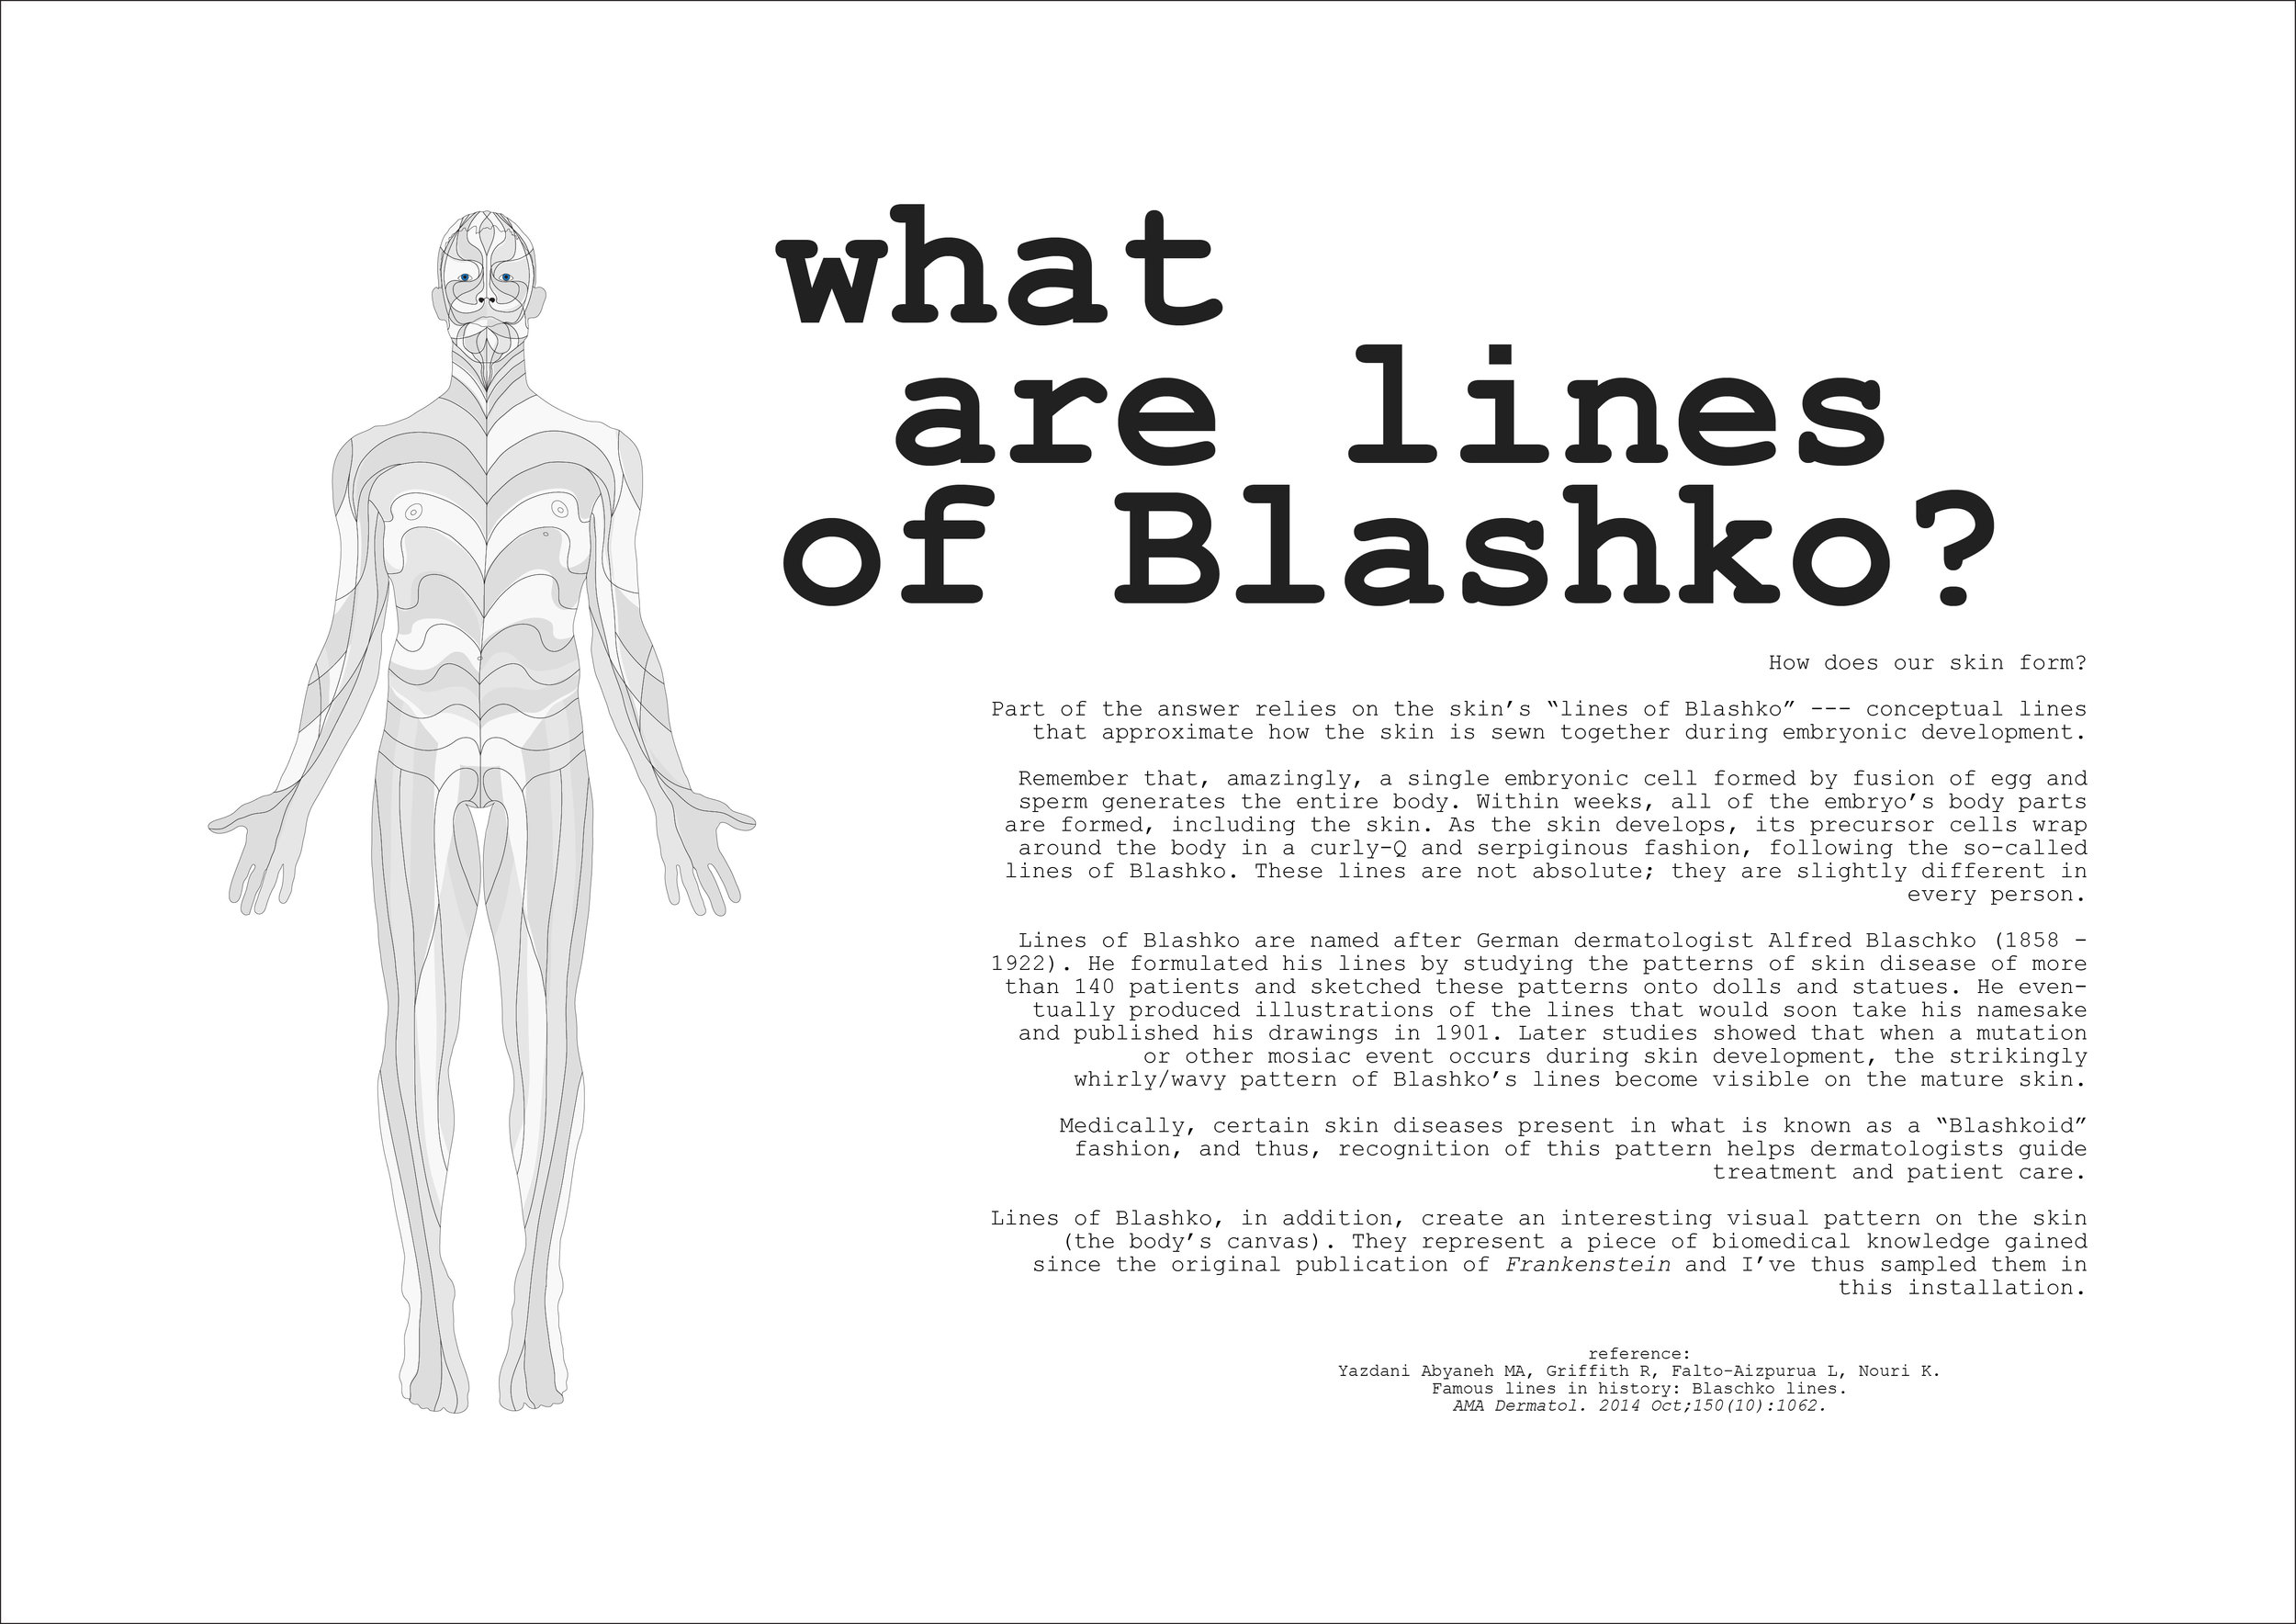 lines of blashko